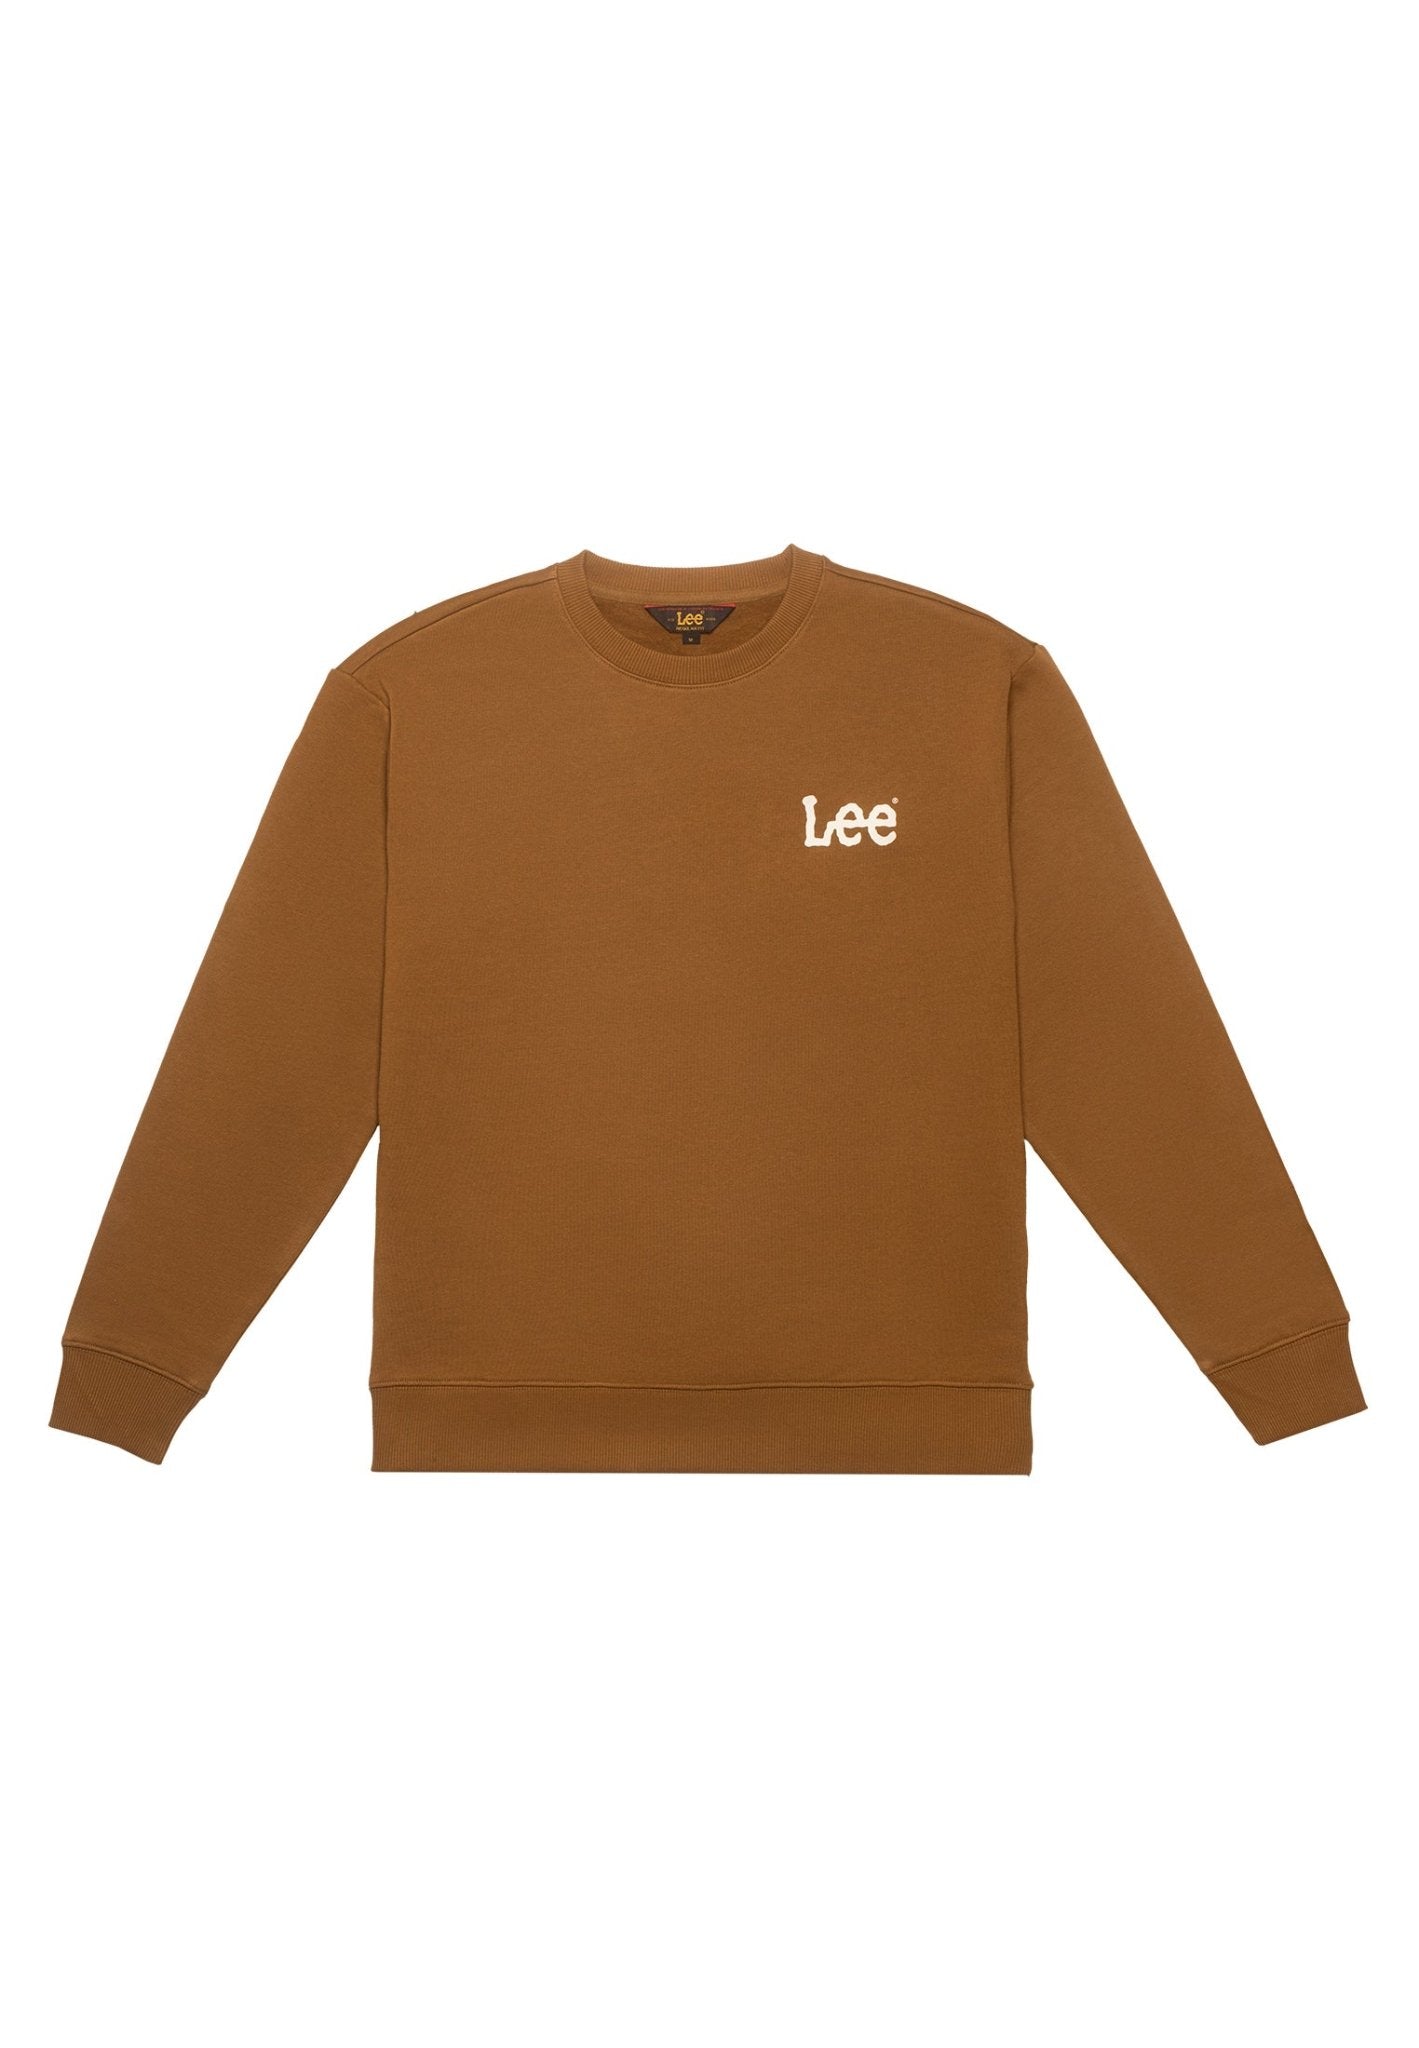 Wobbly Lee Sweatshirt in Tumbleweed